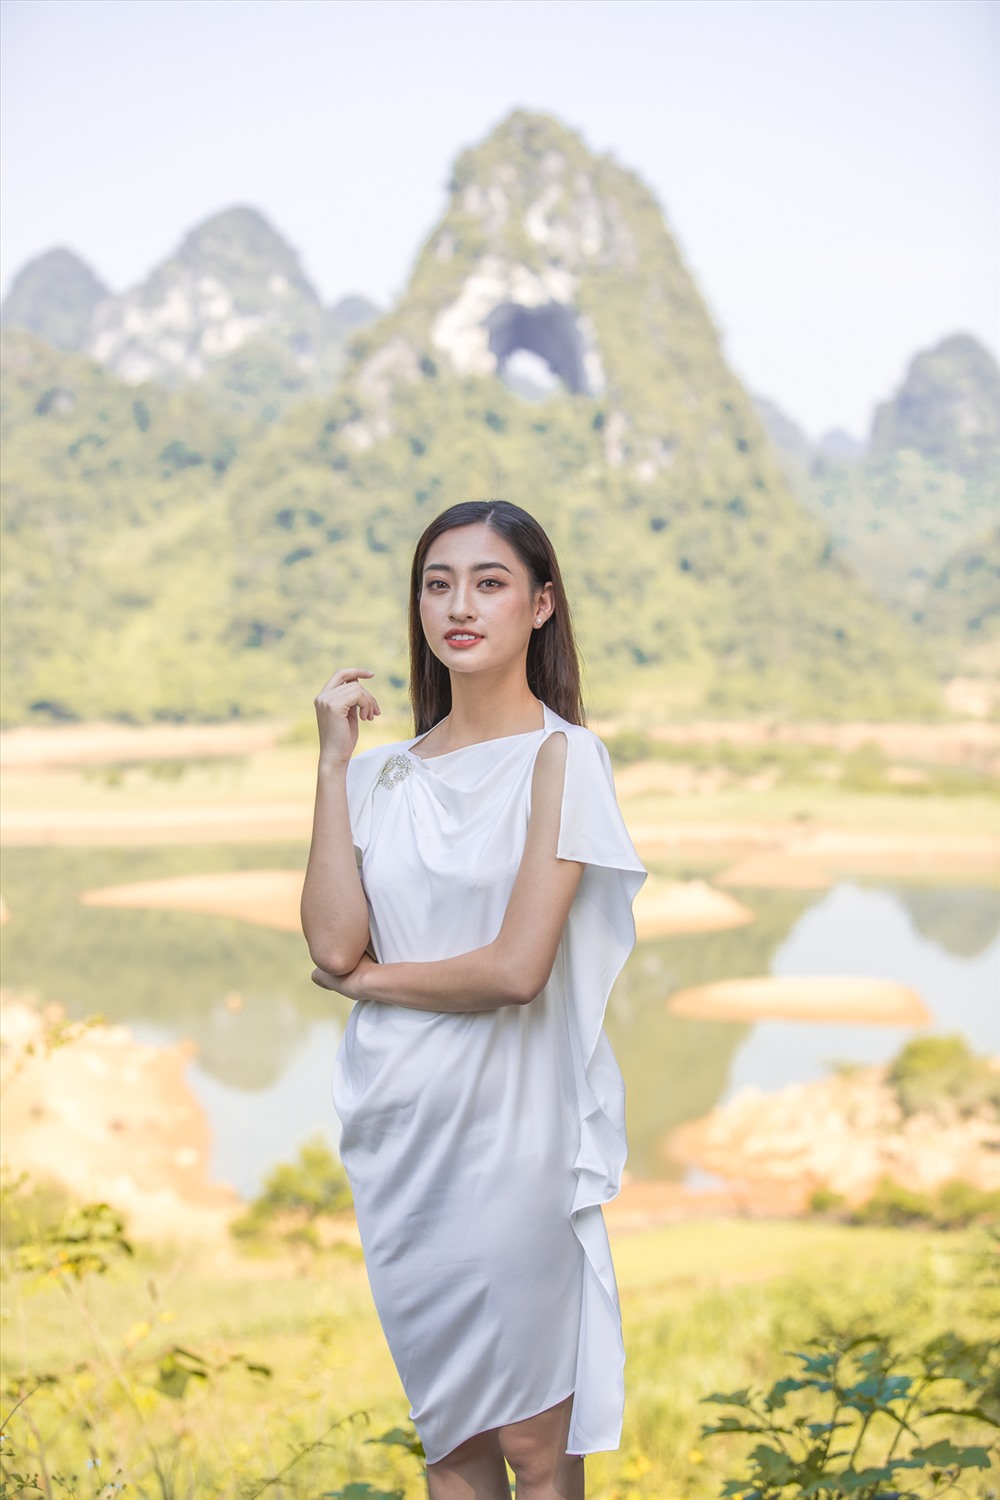 Tày là một trong những dân tộc thiểu số đặc biệt của Việt Nam. Với văn hóa đa dạng và phong phú, họ đã tạo nên những nét độc đáo và khác biệt so với các dân tộc khác. Xem hình ảnh để tìm hiểu thêm về nét đẹp và văn hóa của dân tộc Tày.